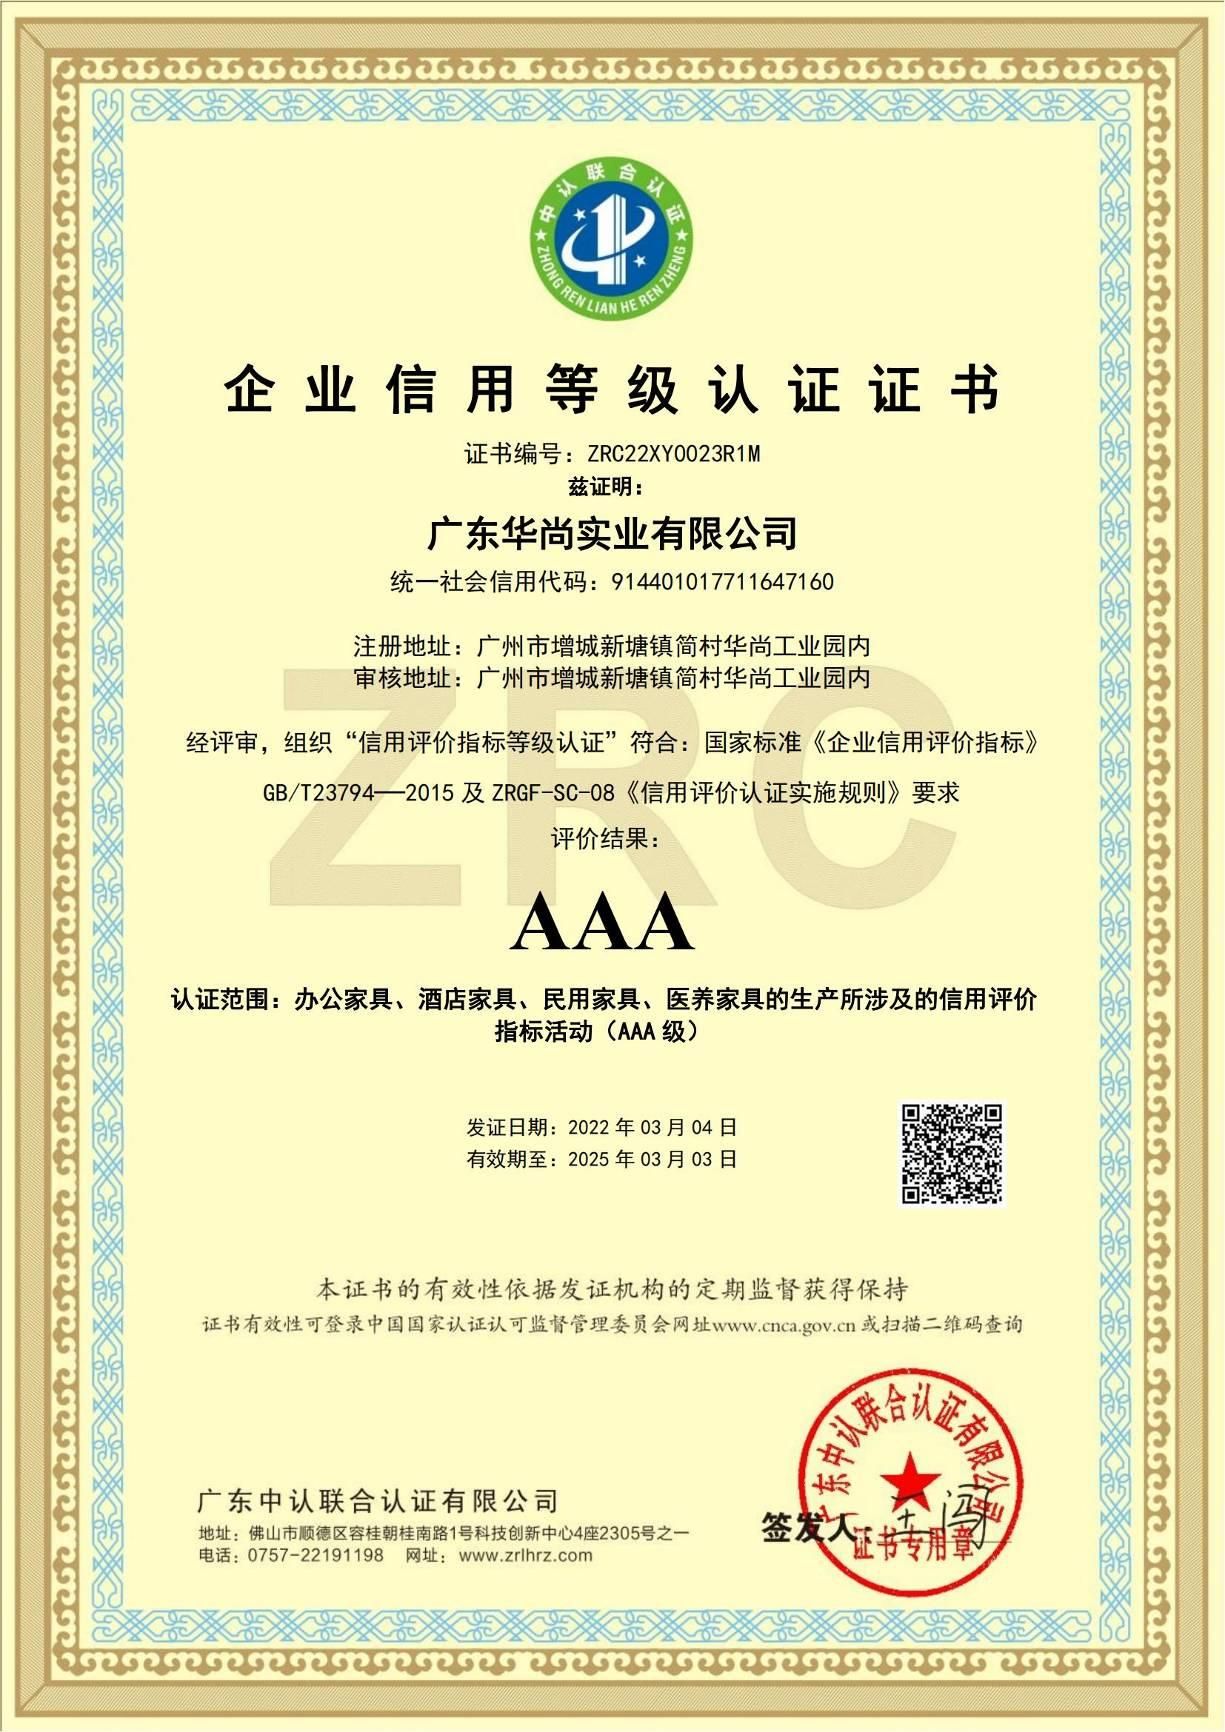 企业信用 AAA 等级认证证书